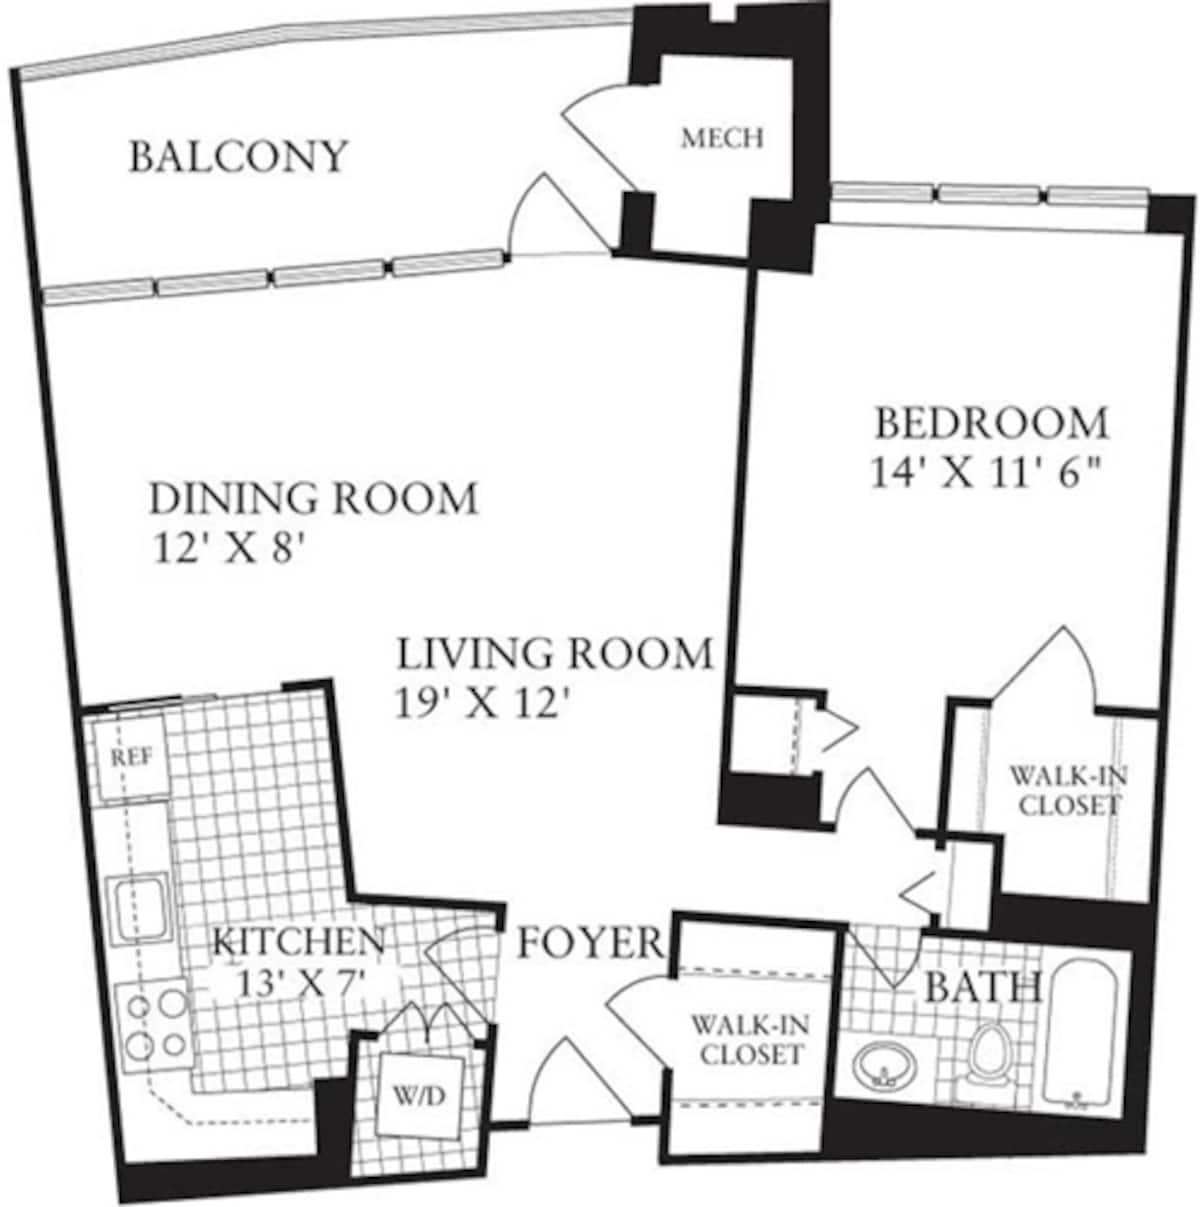 Floorplan diagram for 1 Bedroom K, showing 1 bedroom